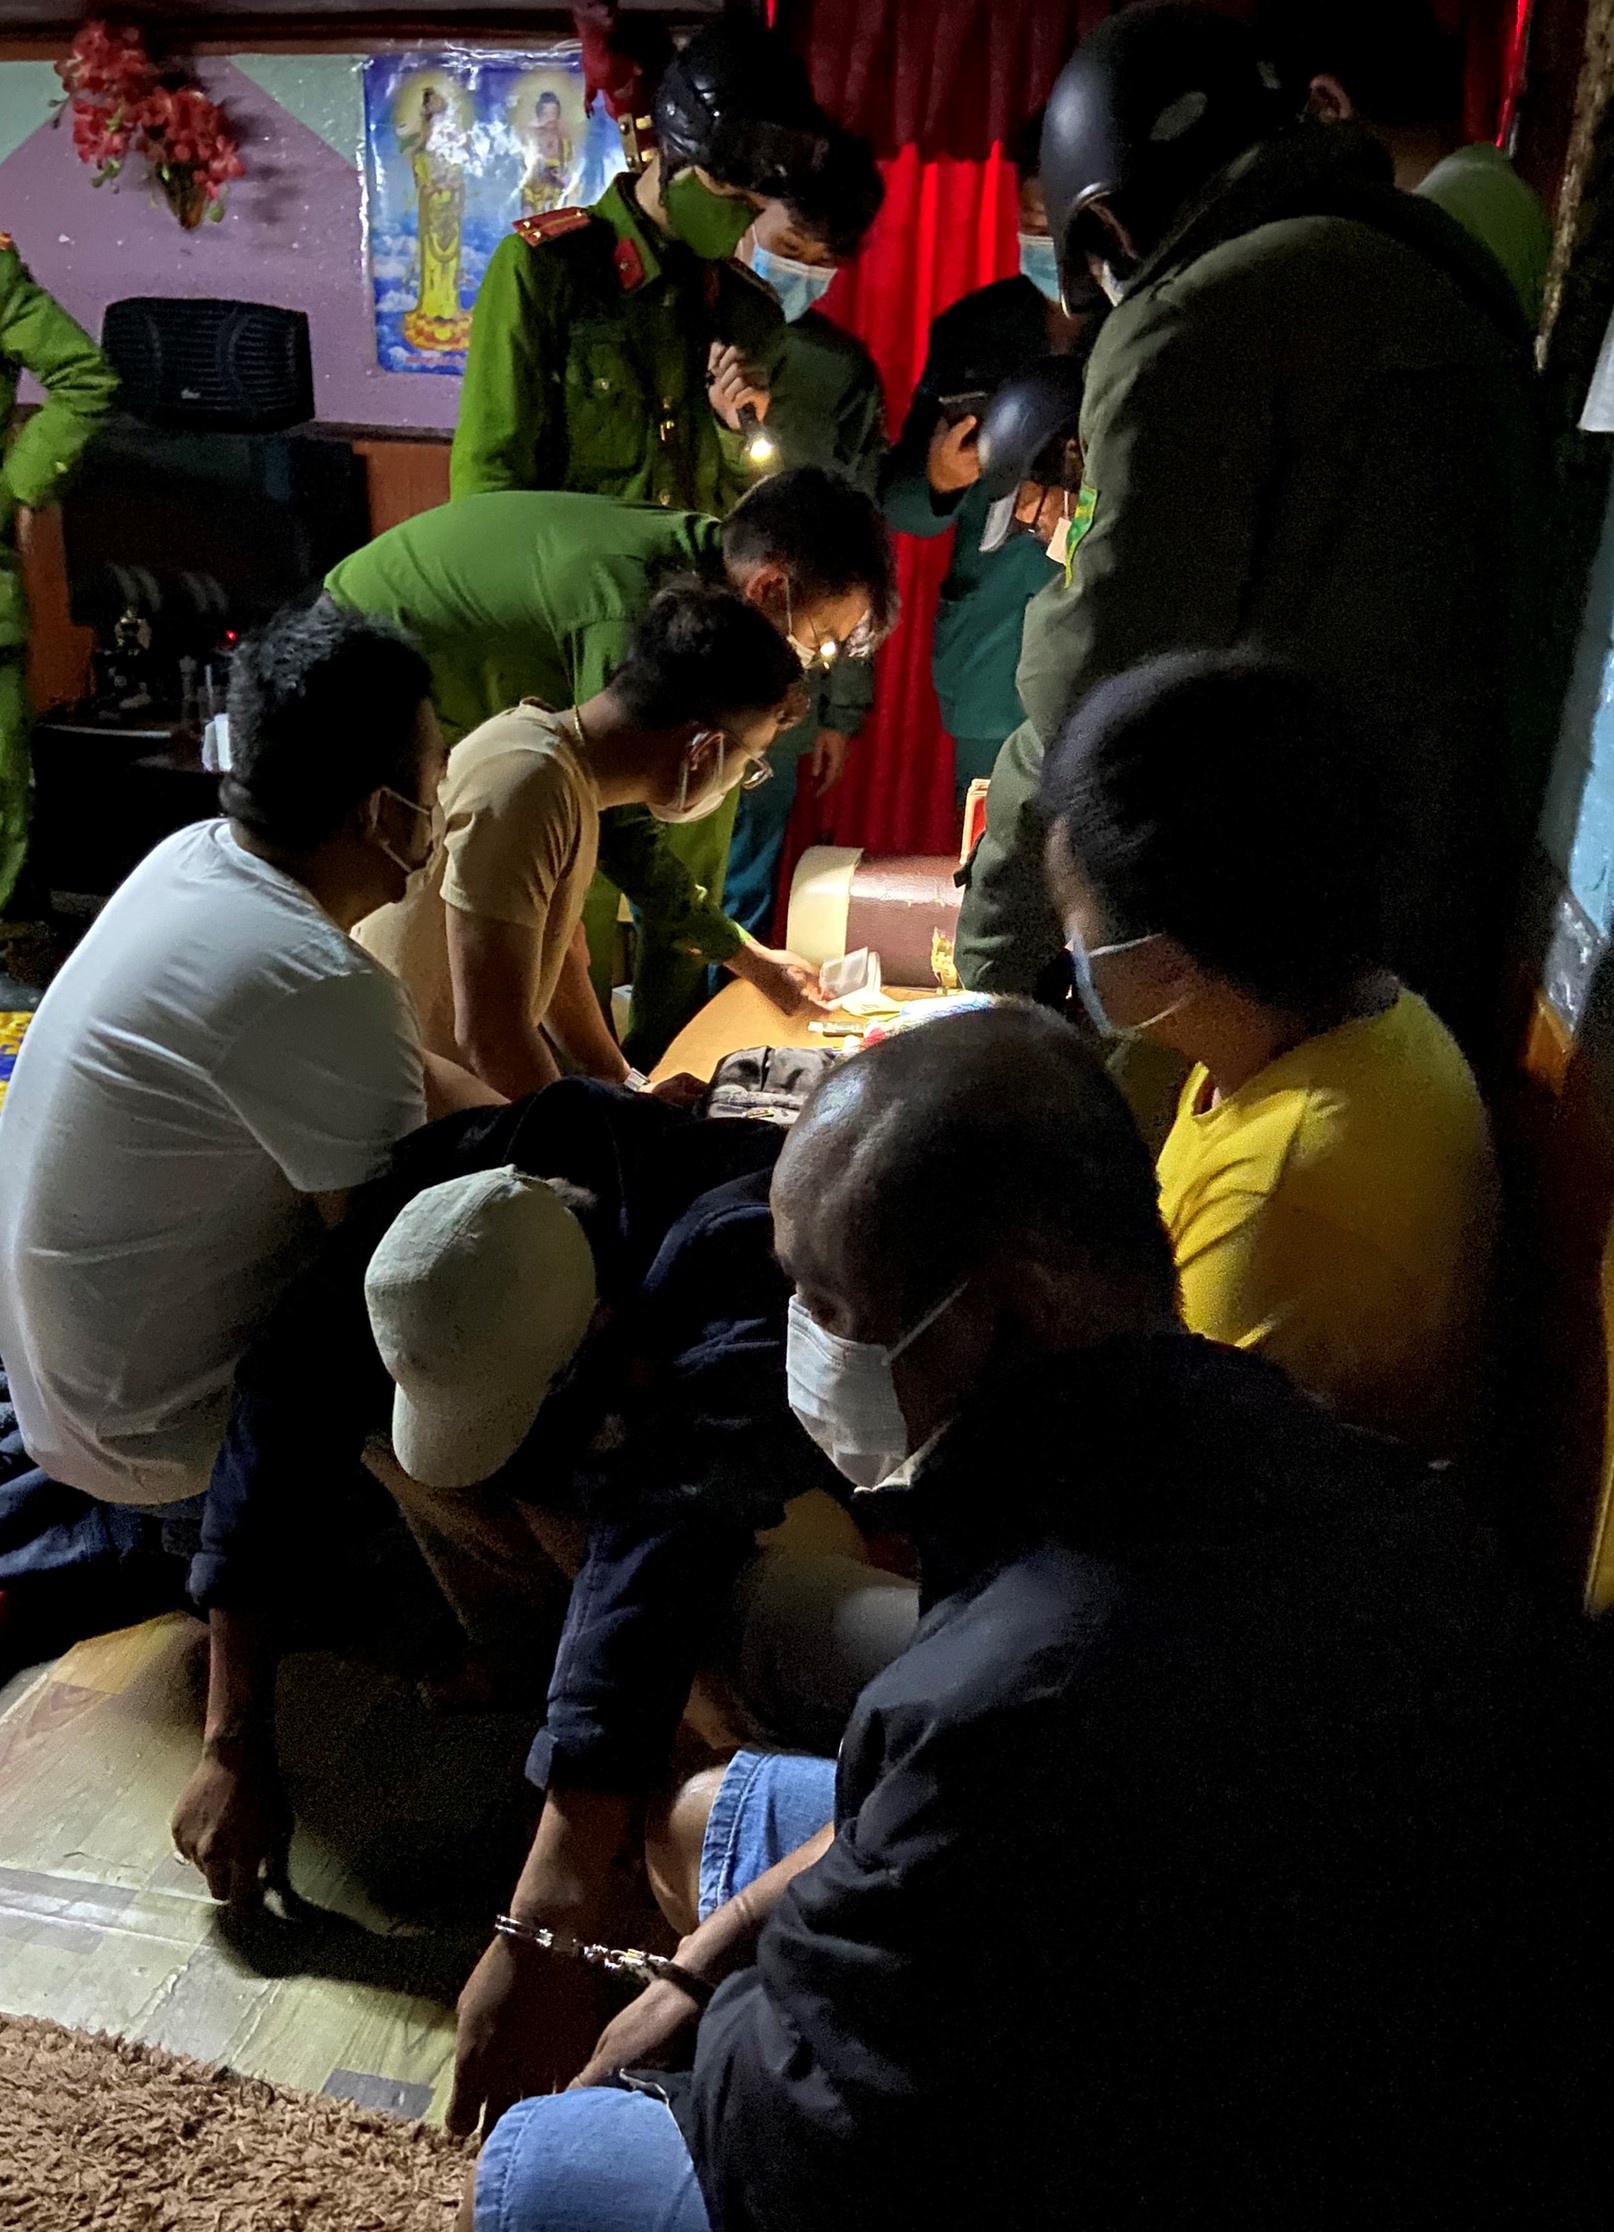 Lâm Đồng: Phạt chủ tiệc sinh nhật giữa vùng dịch Covid-19 số tiền 15 triệu đồng